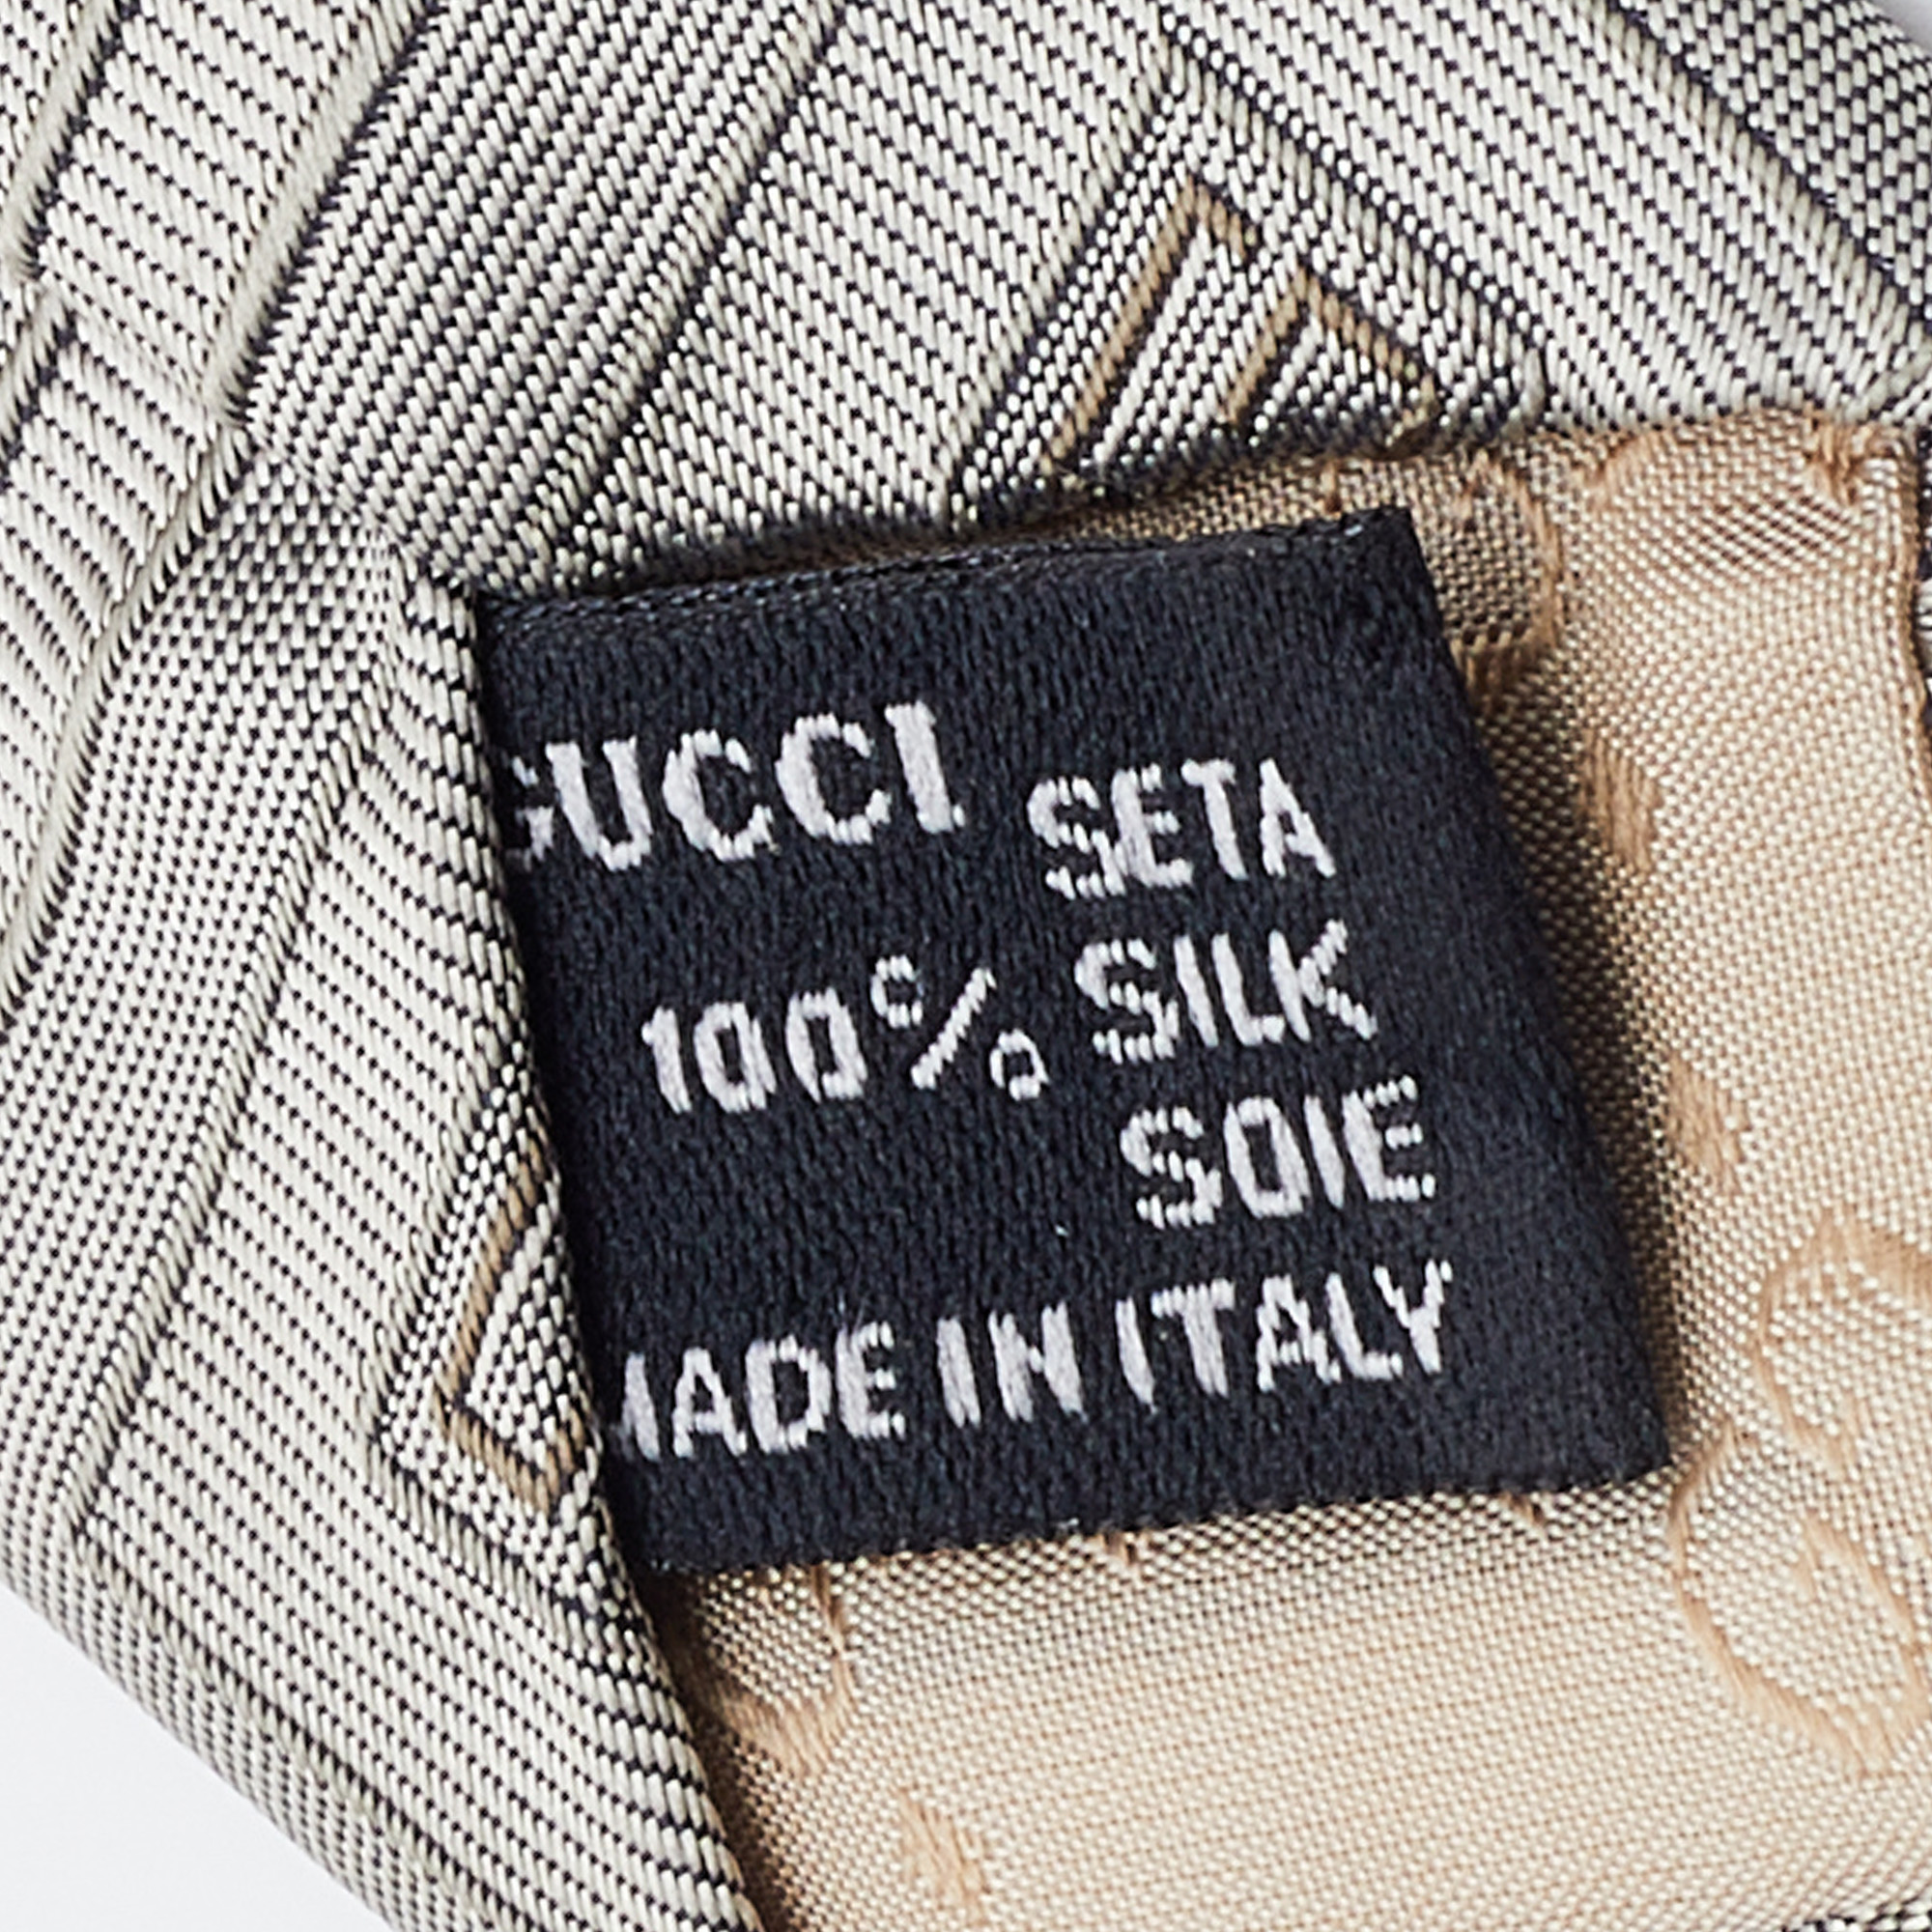 Gucci Grey G Silk Jacquard Tie